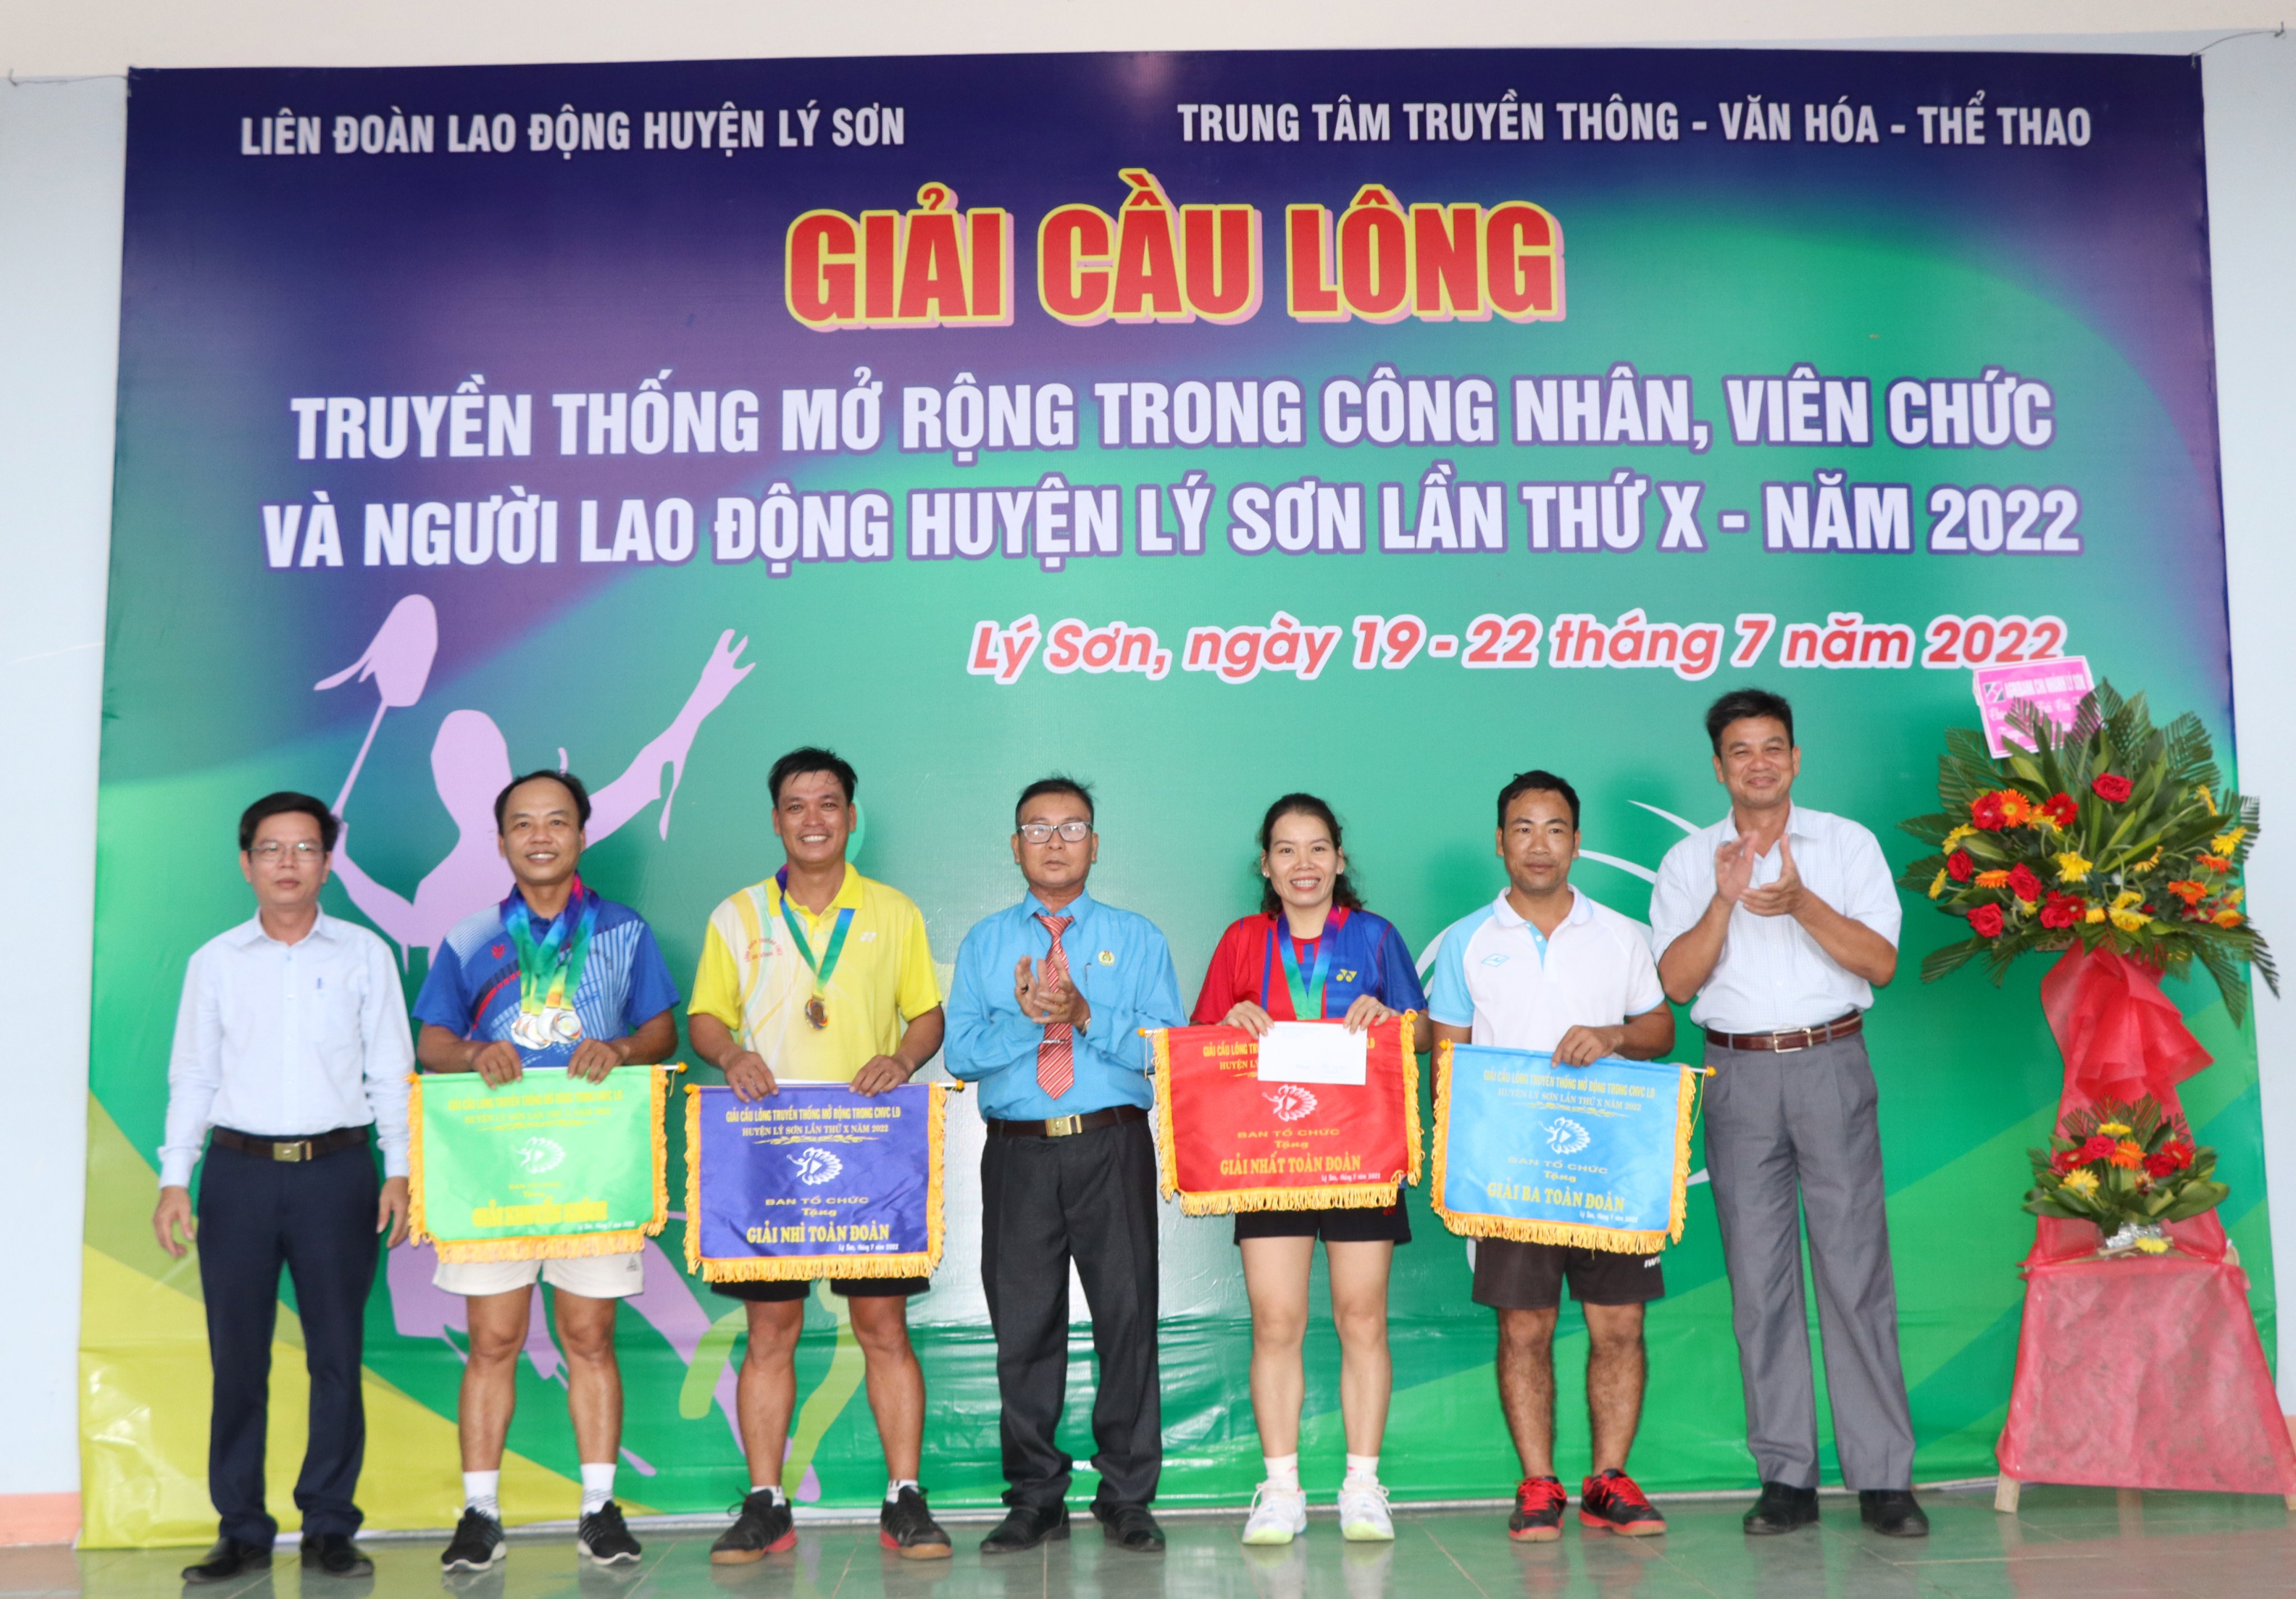 Bế mạc giải Cầu lông công nhân, viên chức và người lao động huyện Lý Sơn